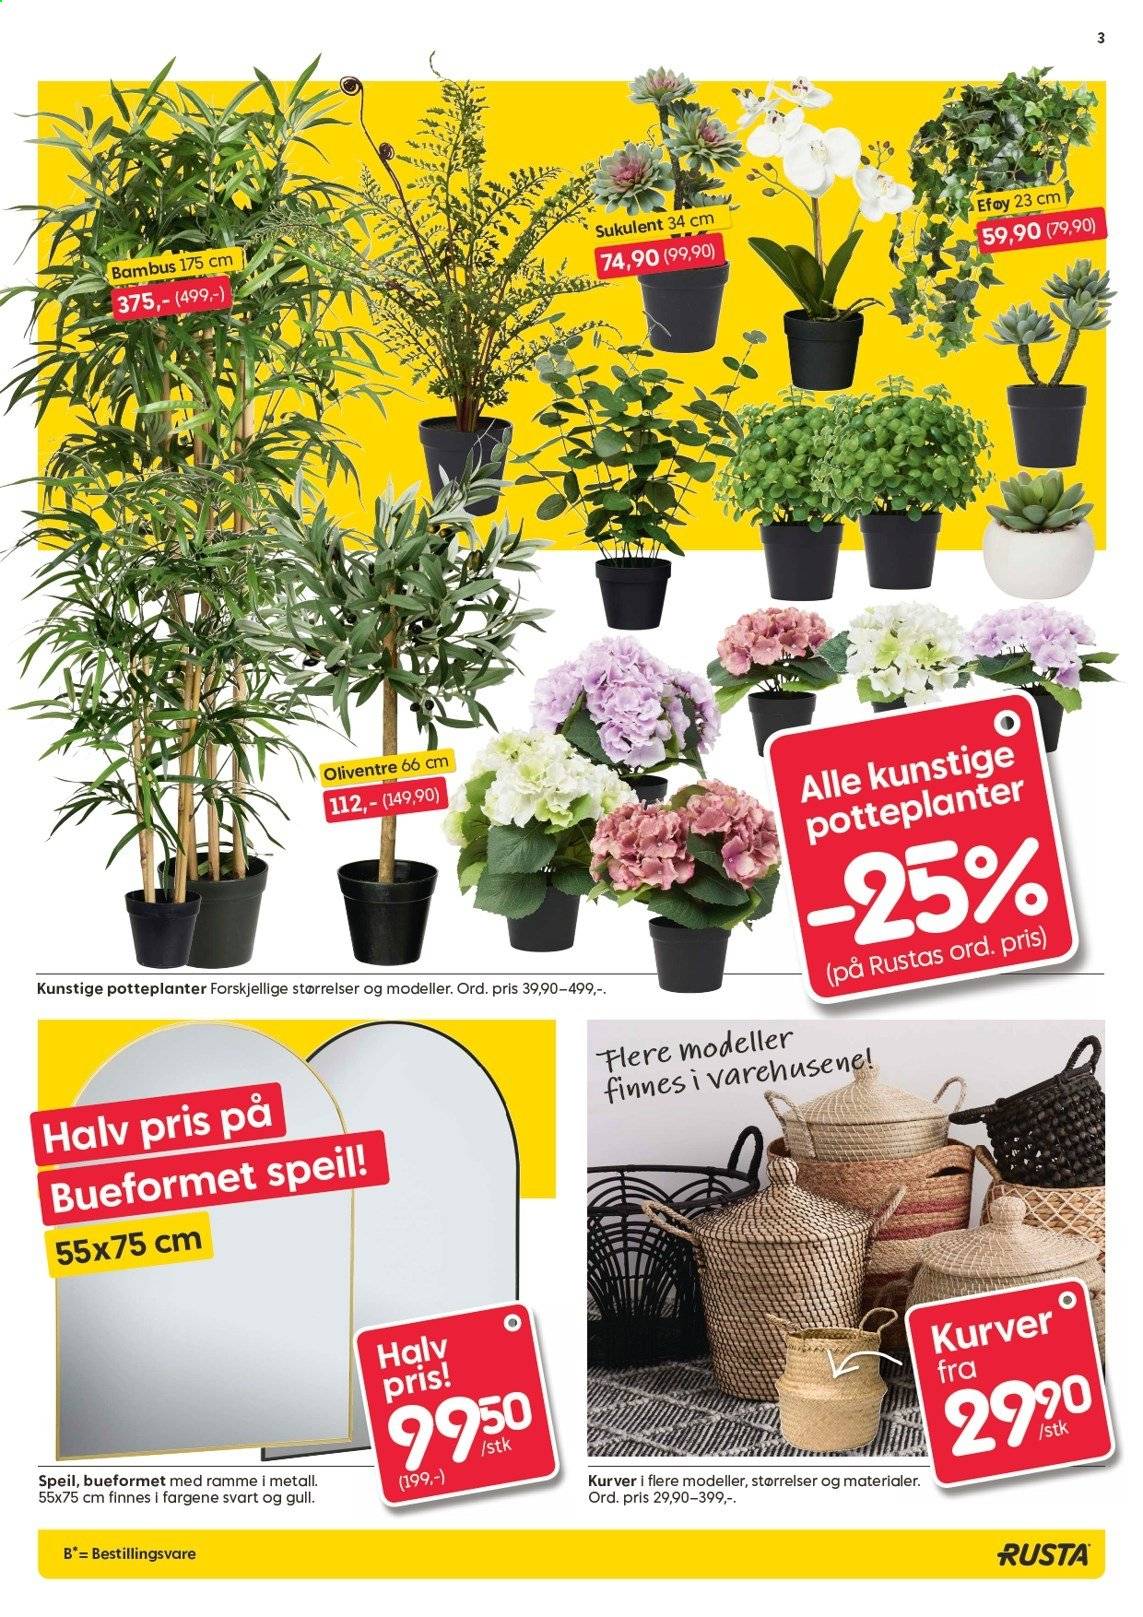 thumbnail - Kundeavis Rusta - 3.2.2021 - 9.2.2021 - Produkter fra tilbudsaviser - kurv, potteplanter, eføy. Side 3.